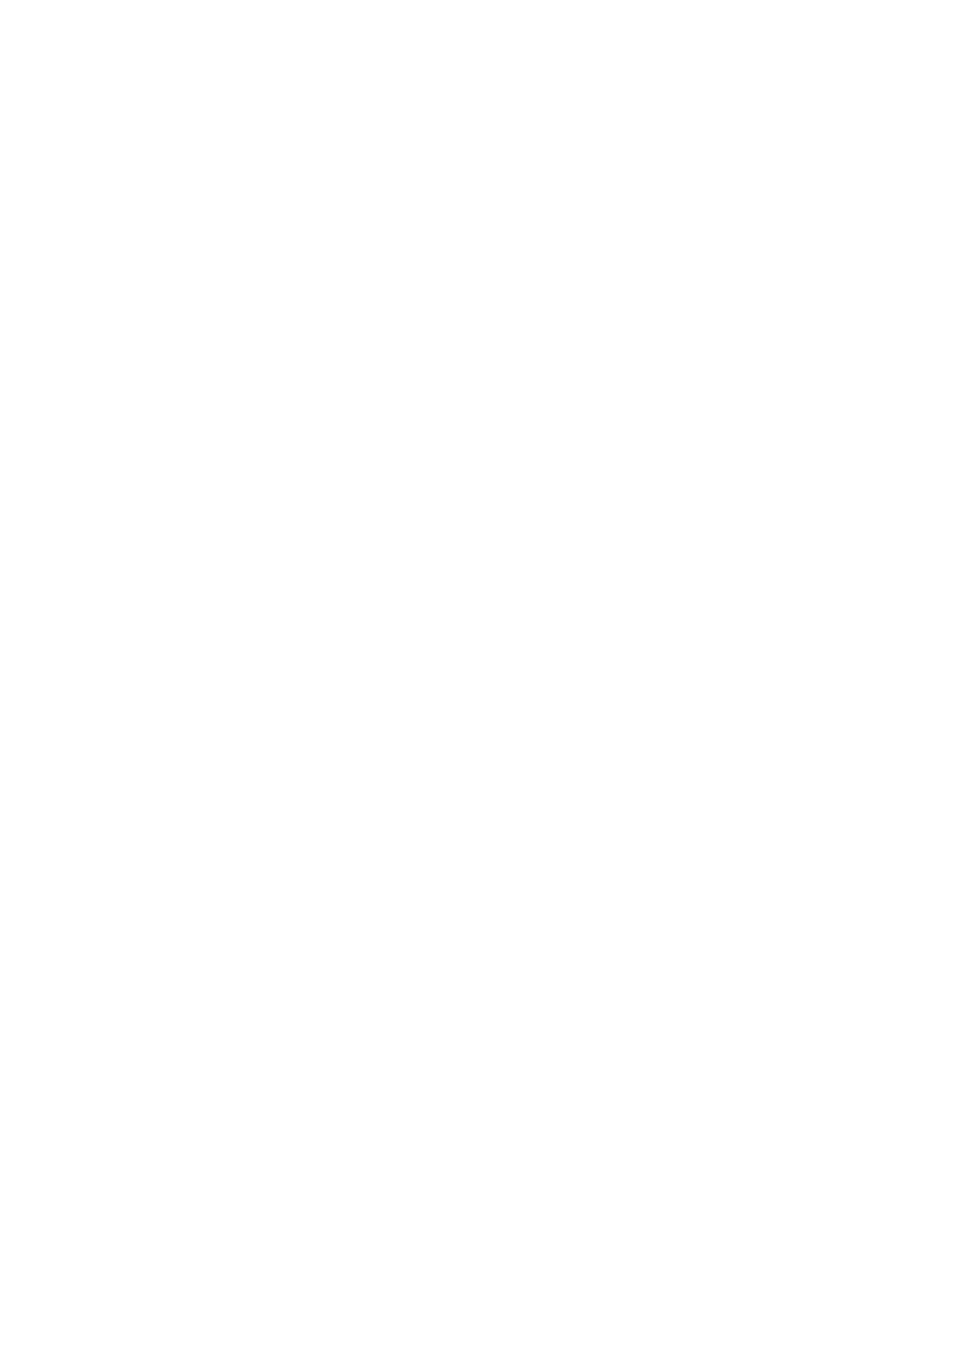 样 梵 林 伽 仙 人 鞭 的 一 些 景 况, 看 着 九 大 仙 草 之 一 让 更 多 计 划 做 薇 商 也 许 应 用 梵 林 伽 仙 人 鞭 产 品 的 用 户 有 一 个 更 知 道 的 理 解 相 比 看 获 得 梵 林 伽 仙 人 鞭 蝙 蝠 蛾 人 参 经 片 有 哪 些 资 历 证 书?